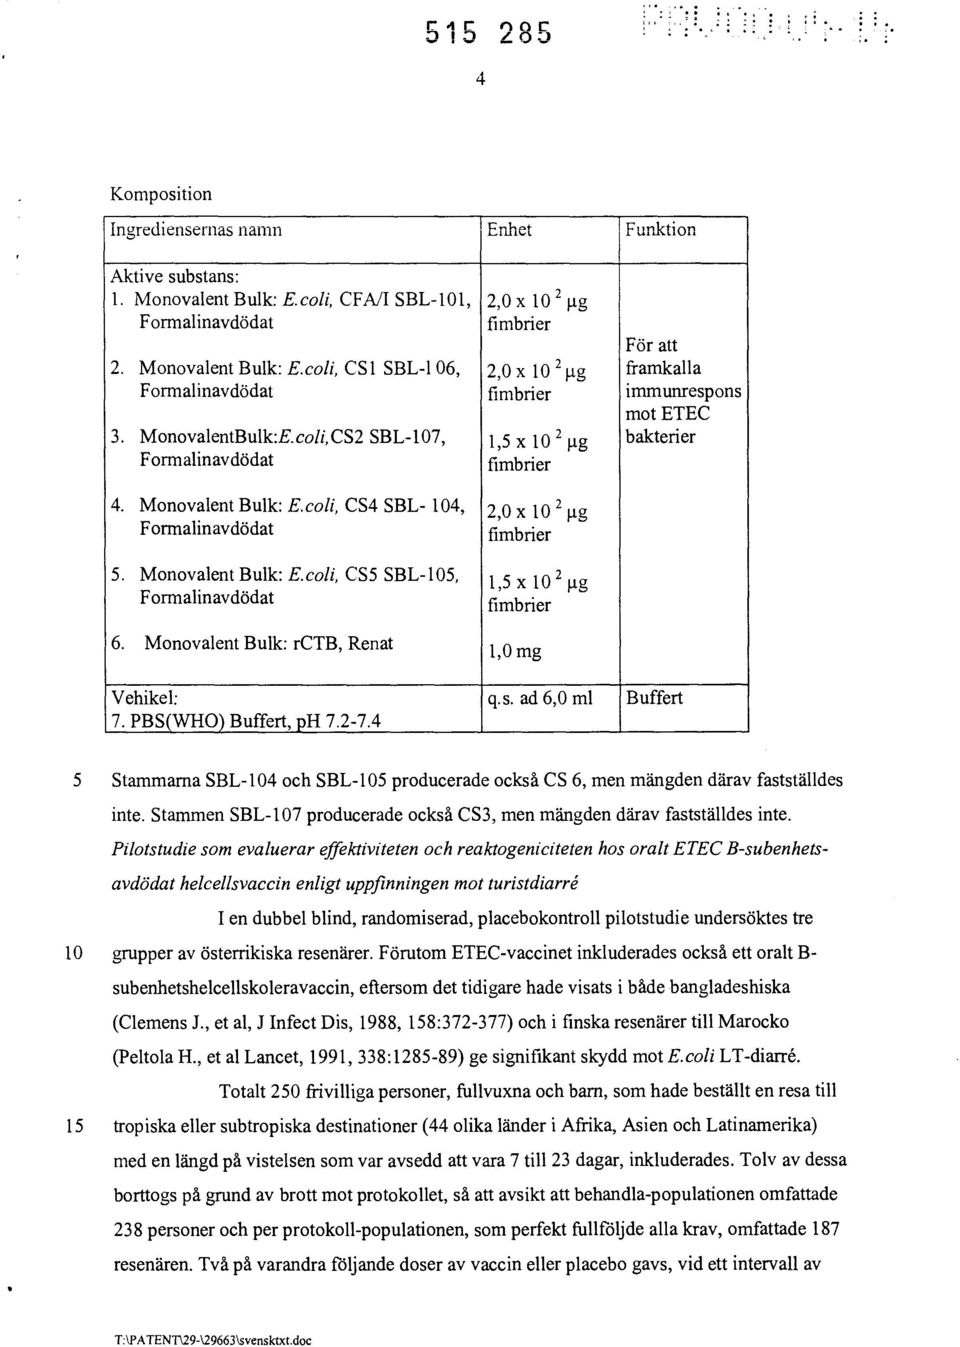 Monovalent Bulk: rctb, Renat 1,0 mg Vehikel: q.s. ad 6,0 ml Buffert 7. PBS(WHO) Buffert, ph 7.2-7.4 5 Stammarna SBL-104 och SBL-105 producerade också CS 6, men mängden därav fastställdes inte.